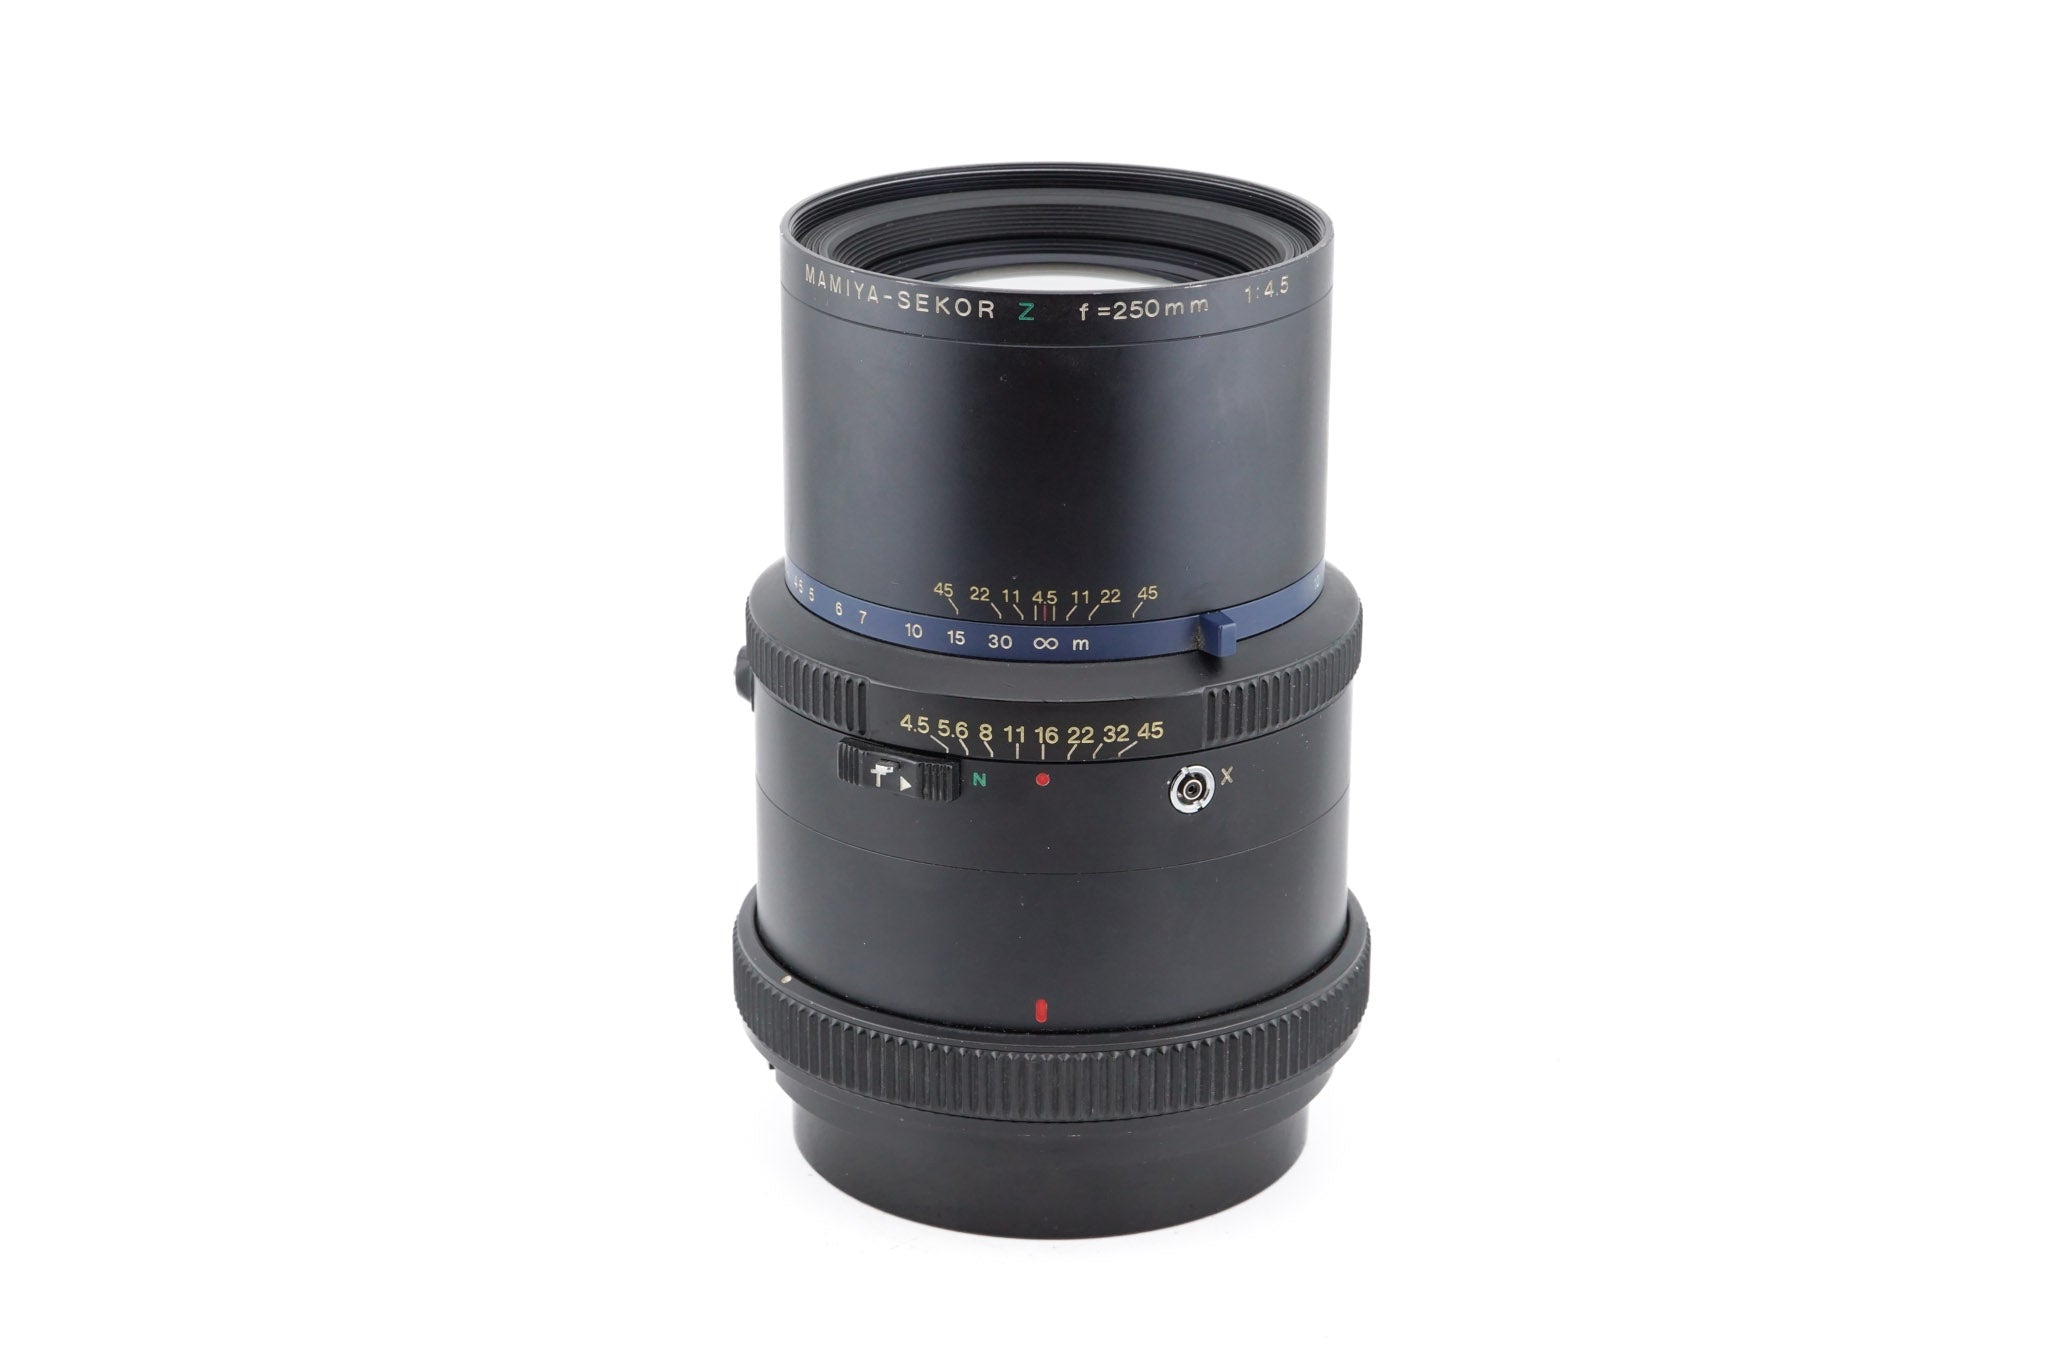 Mamiya 250mm f4.5 Sekor Z - Lens